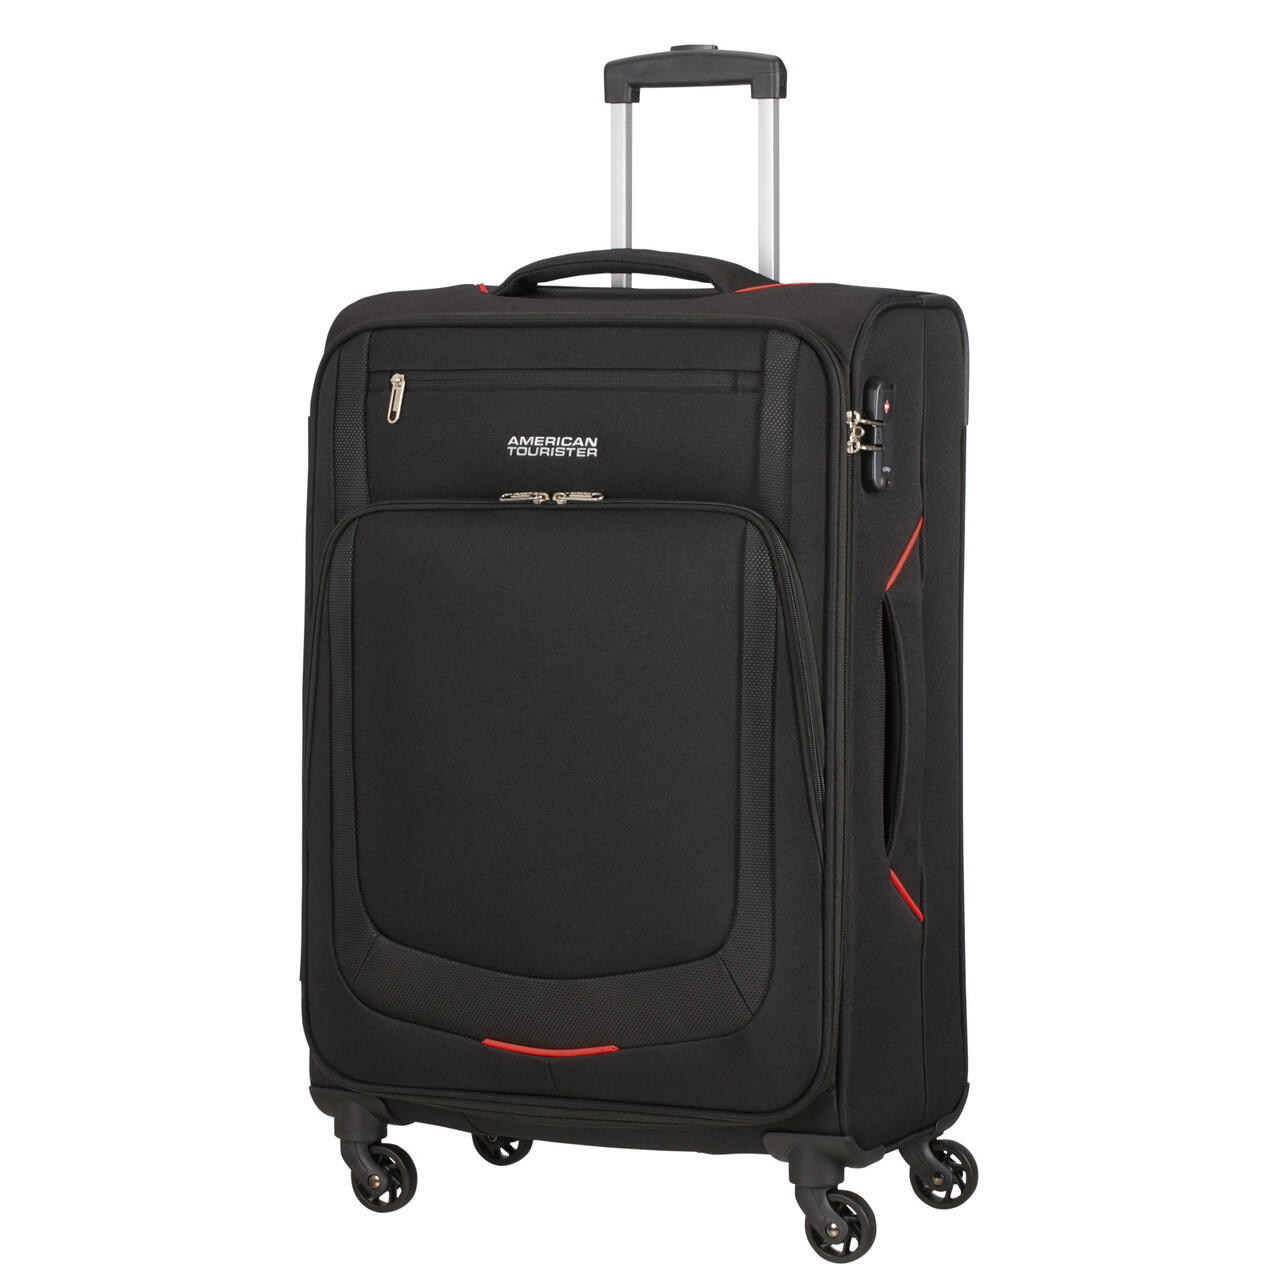 Summer Session Medium Suitcase - 67cm - Black/Red 1/6